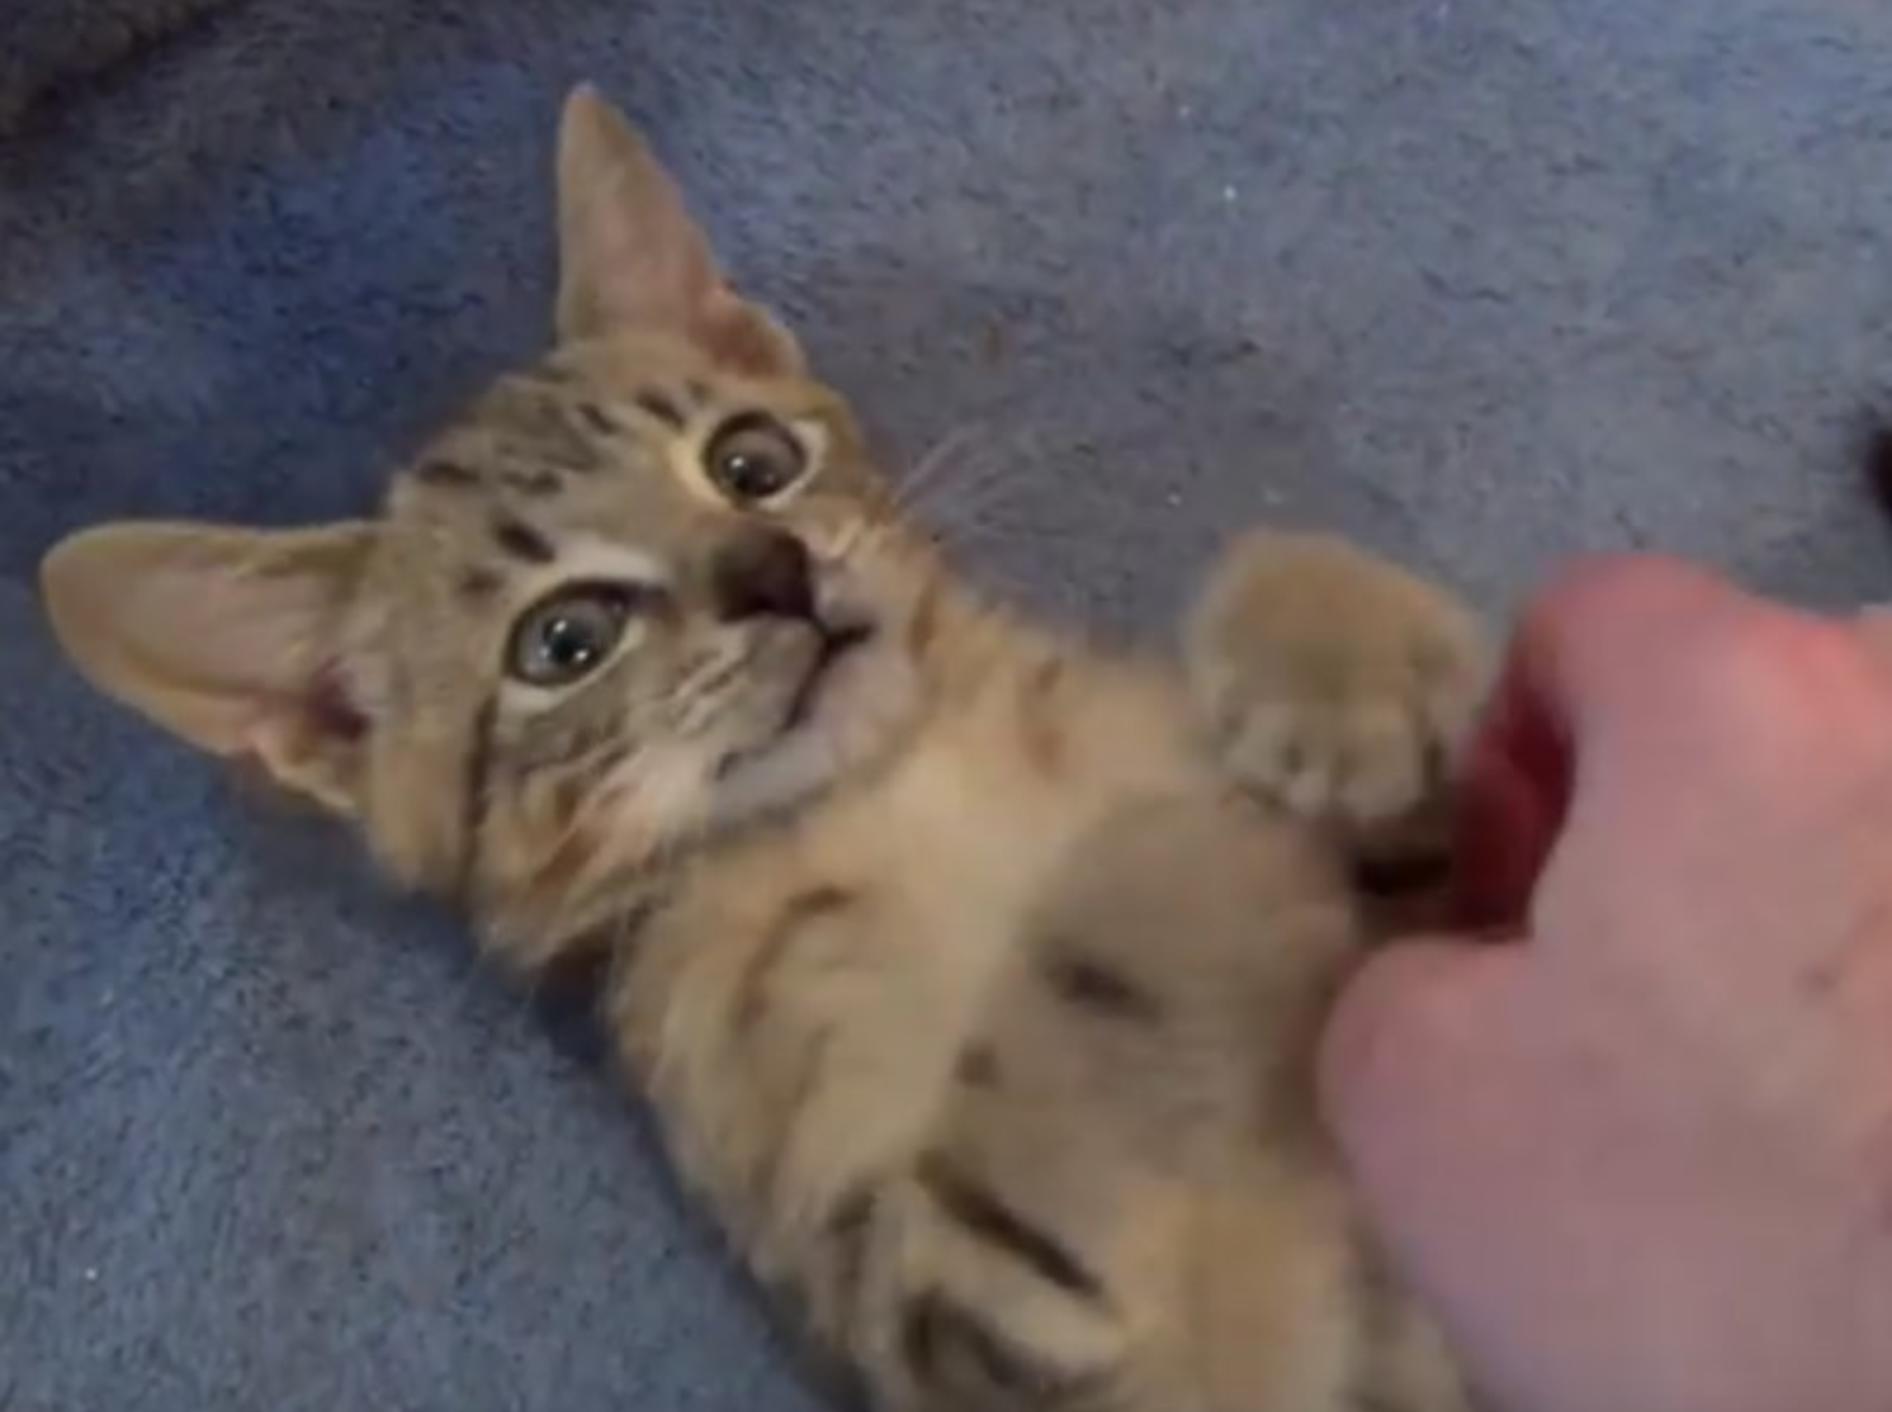 Acron das Katzenbaby genießt die Streicheleinheiten – YouTube / The Kits Cats